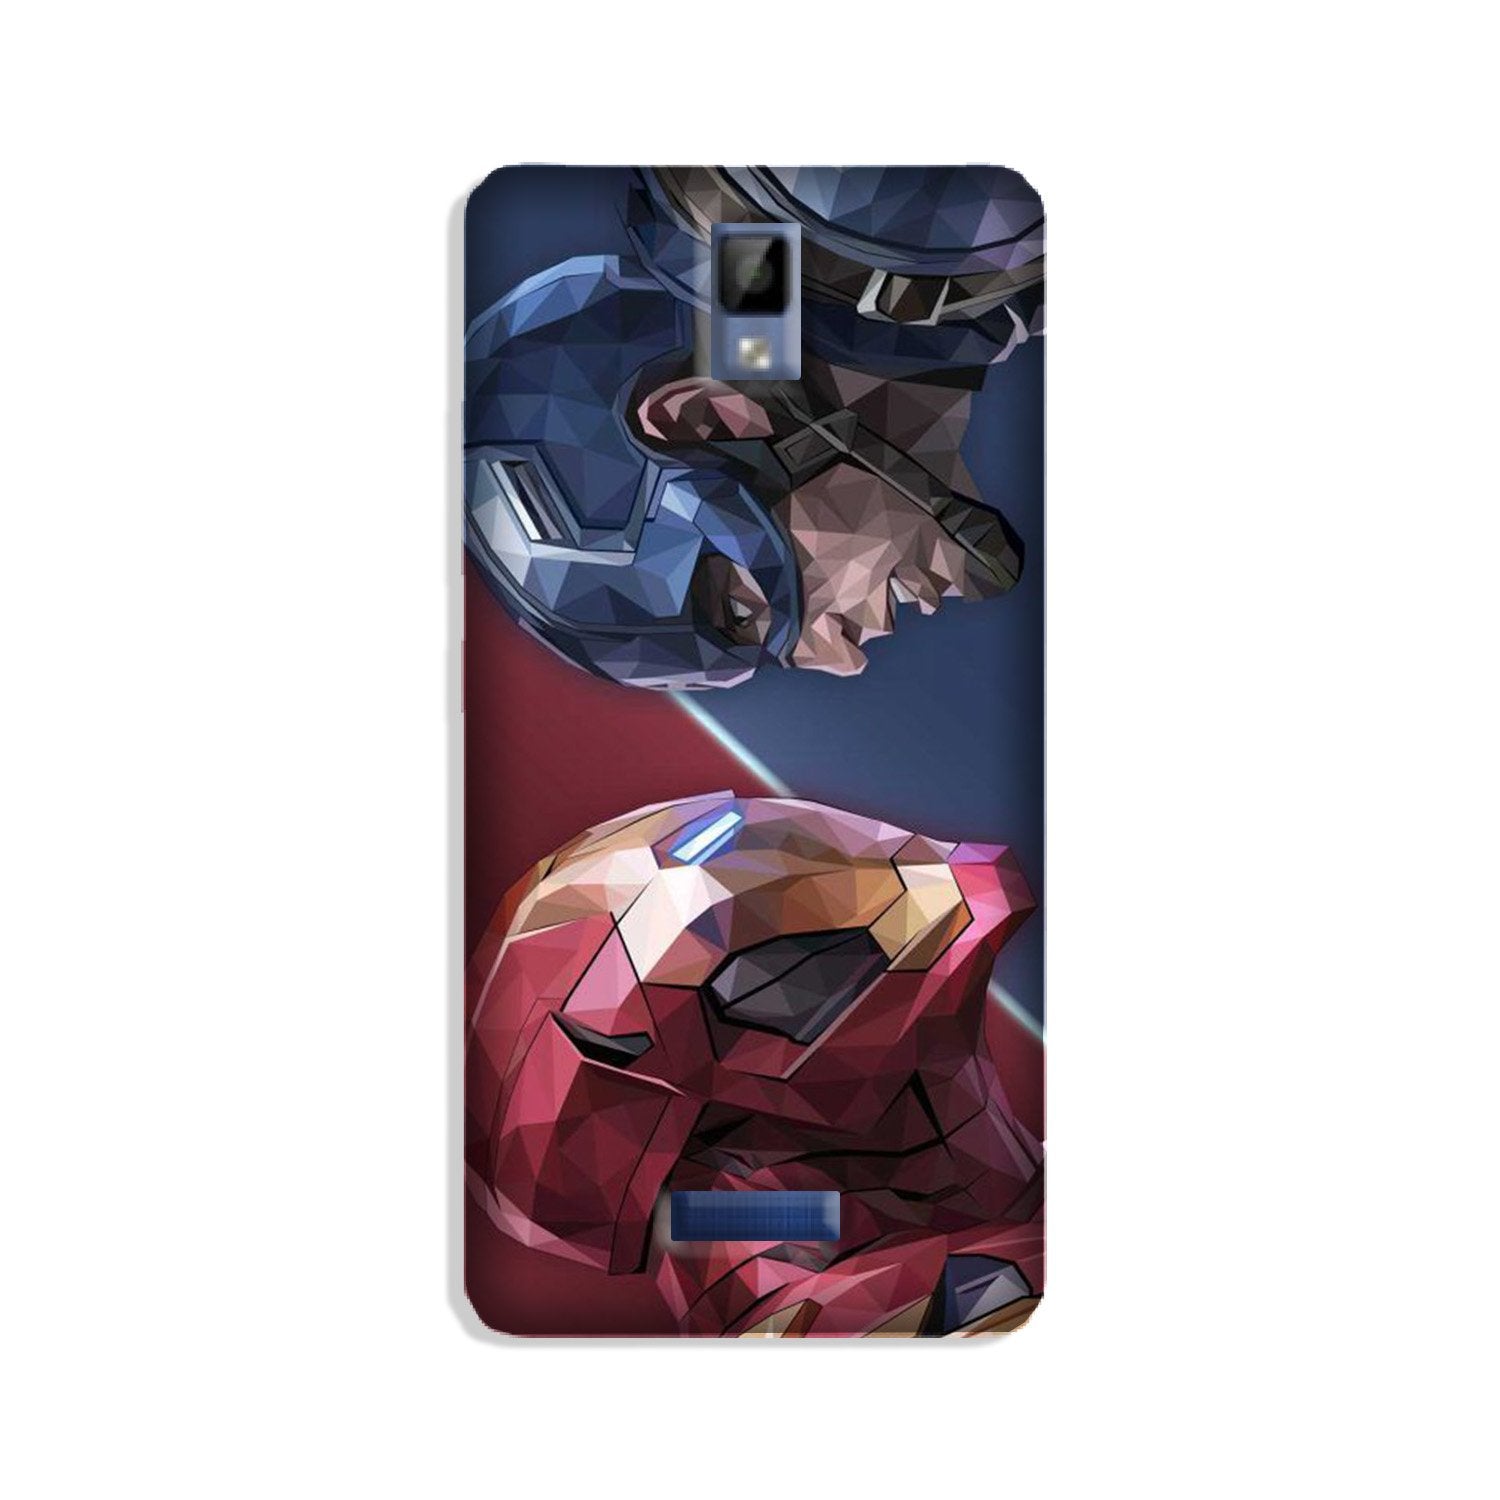 Ironman Captain America Case for Gionee P7 (Design No. 245)